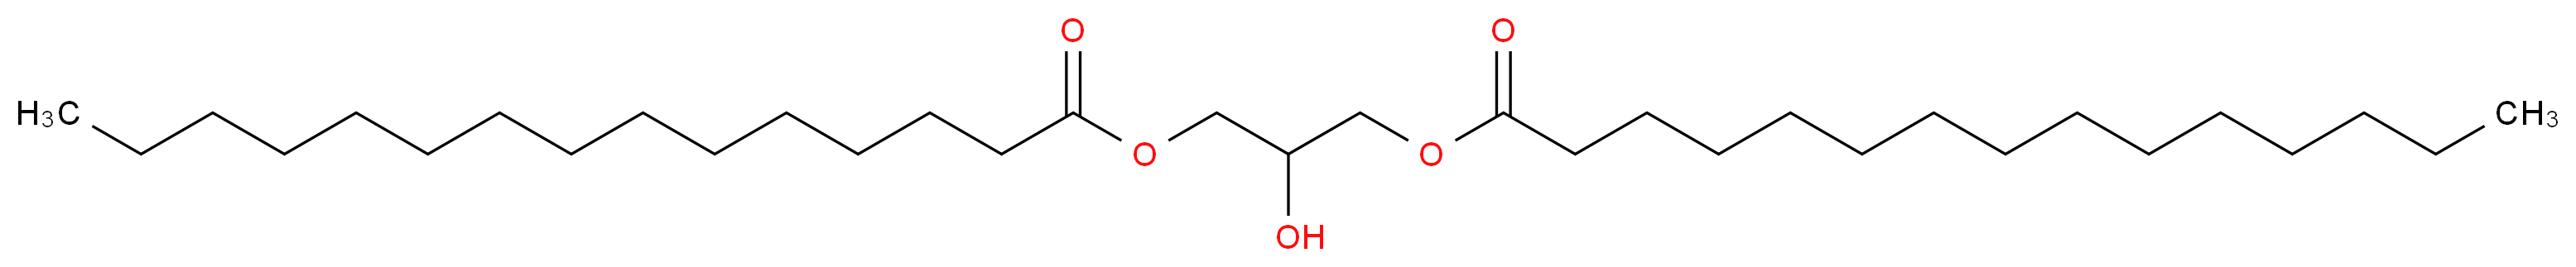 1,3-Dipentadecanoin (C15:0)_Molecular_structure_CAS_102783-66-4)